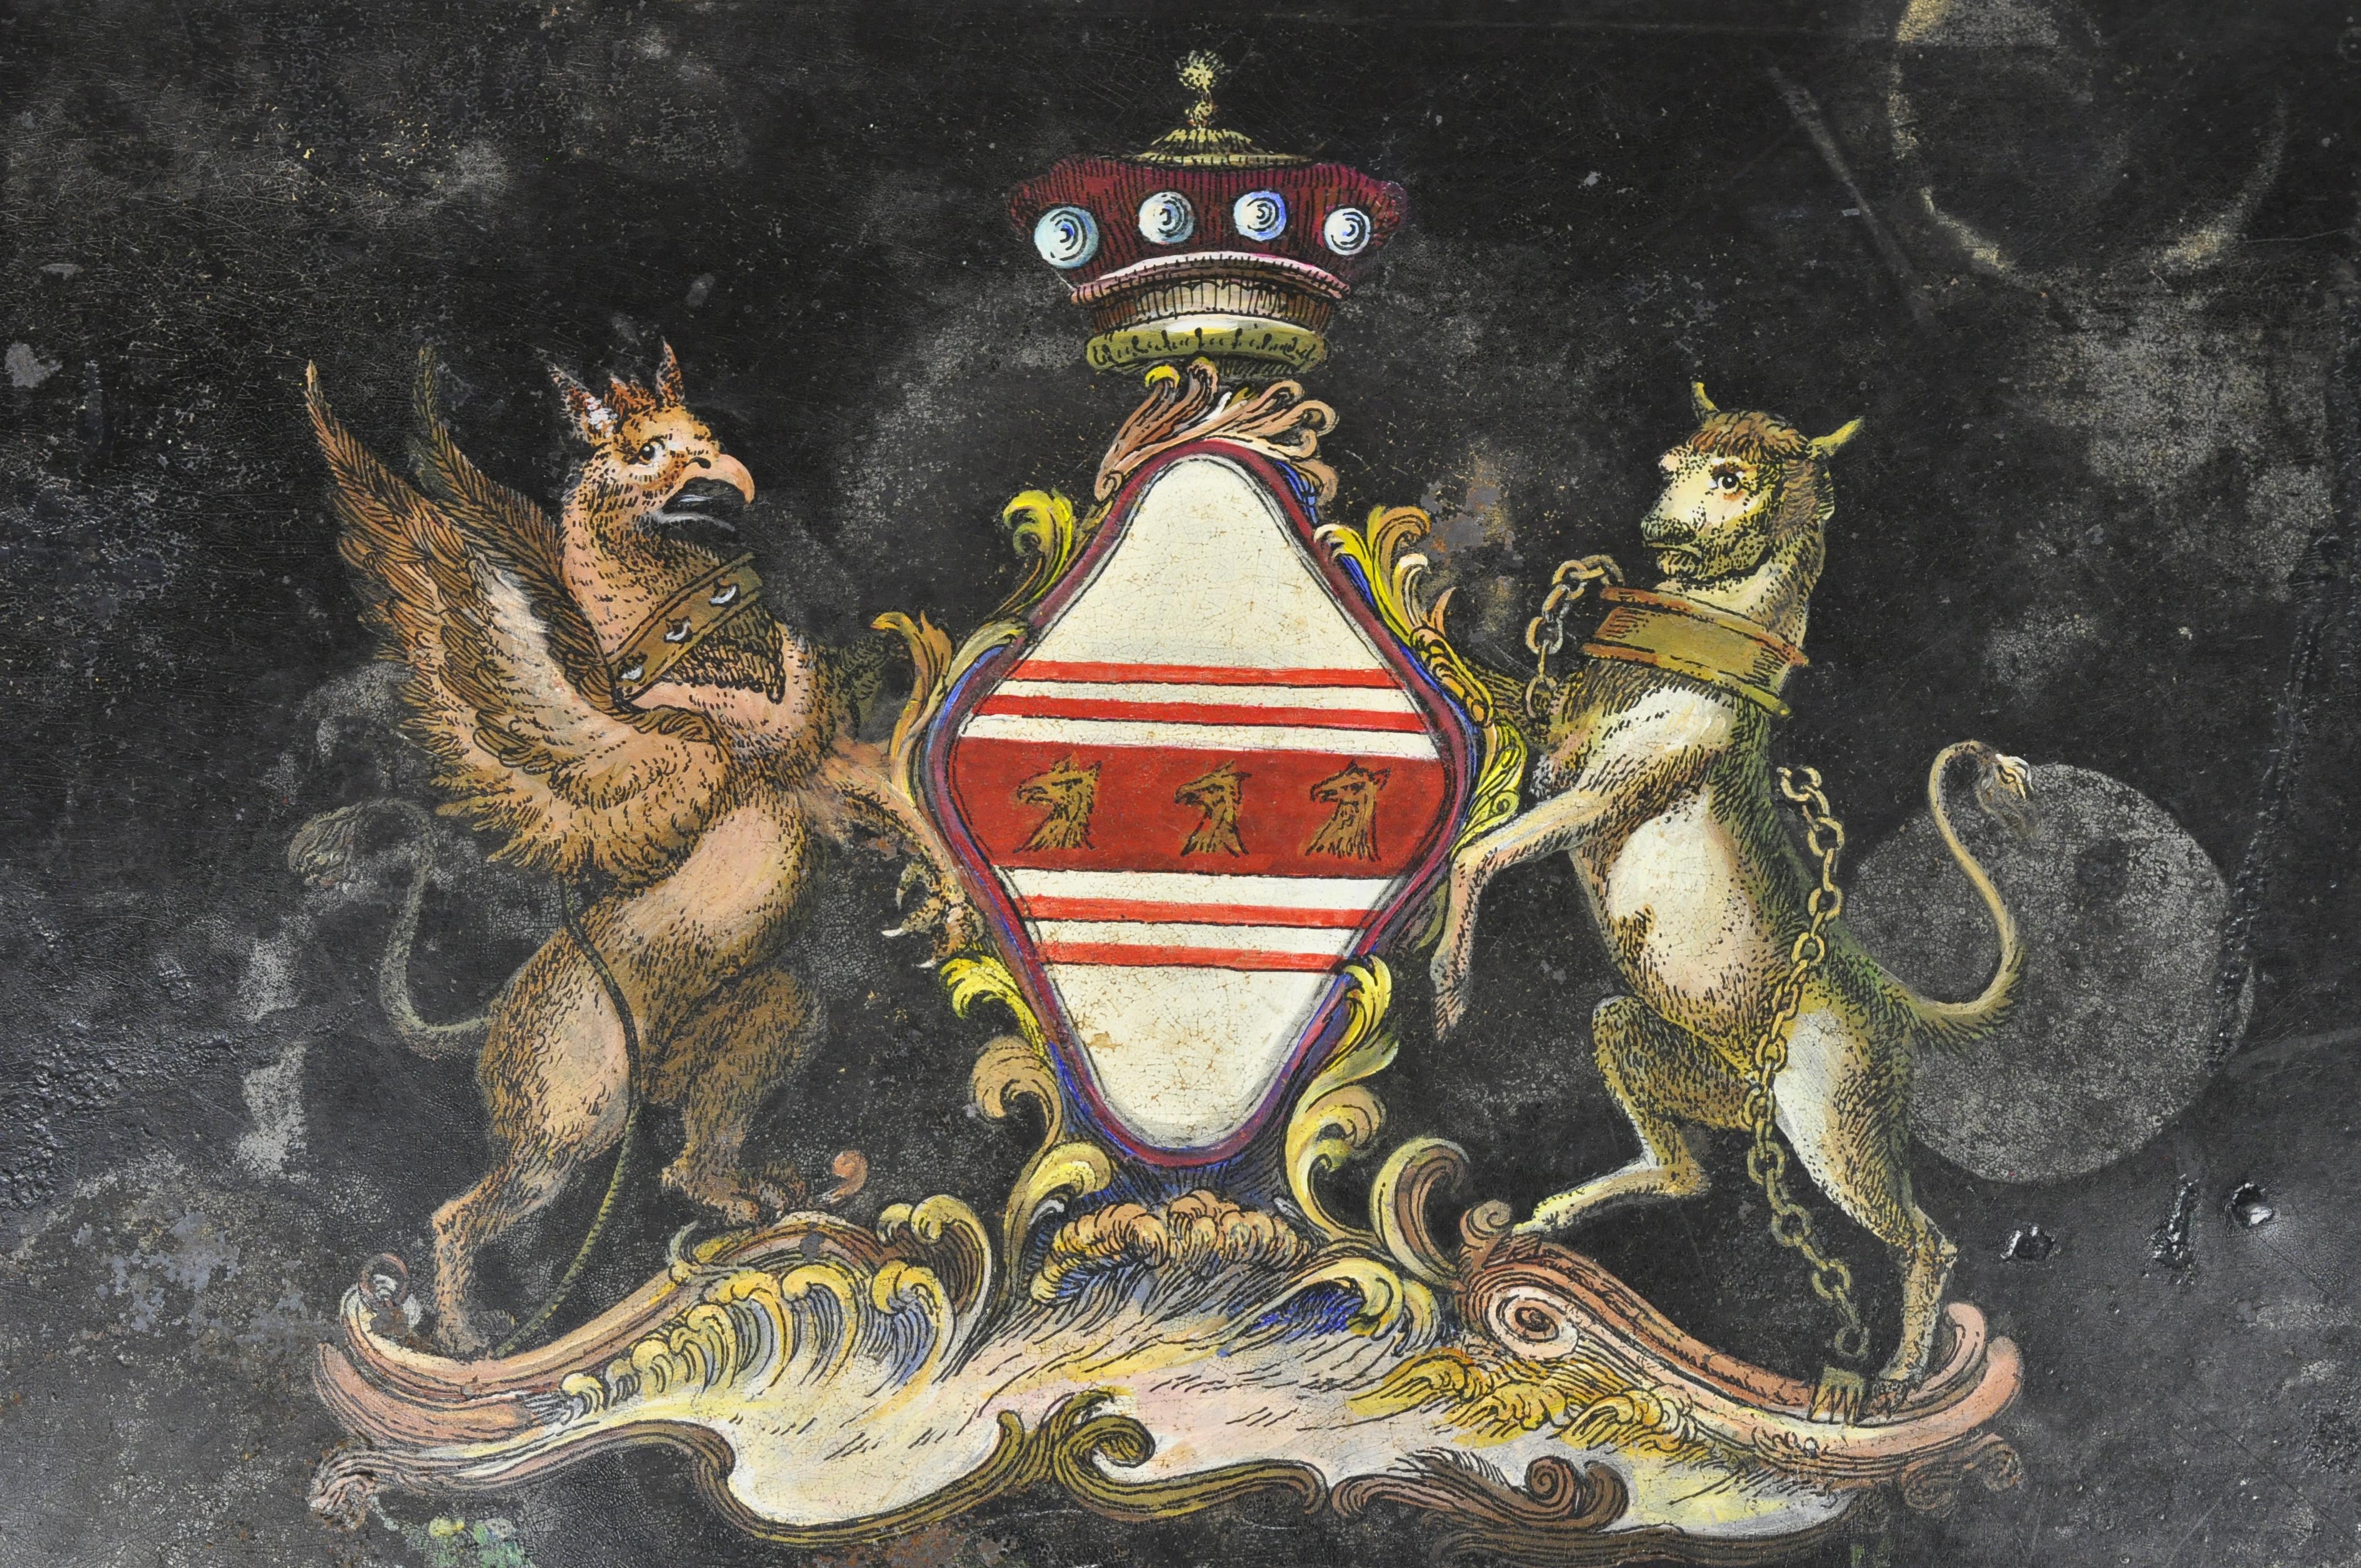 19e siècle Régence anglaise Tole Metal Toleware plateau peint à la main couronne bouclier. L'article présente des détails peints à la main sur toute la surface, avec un bouclier, une couronne, un cheval et un aigle au centre, une finition